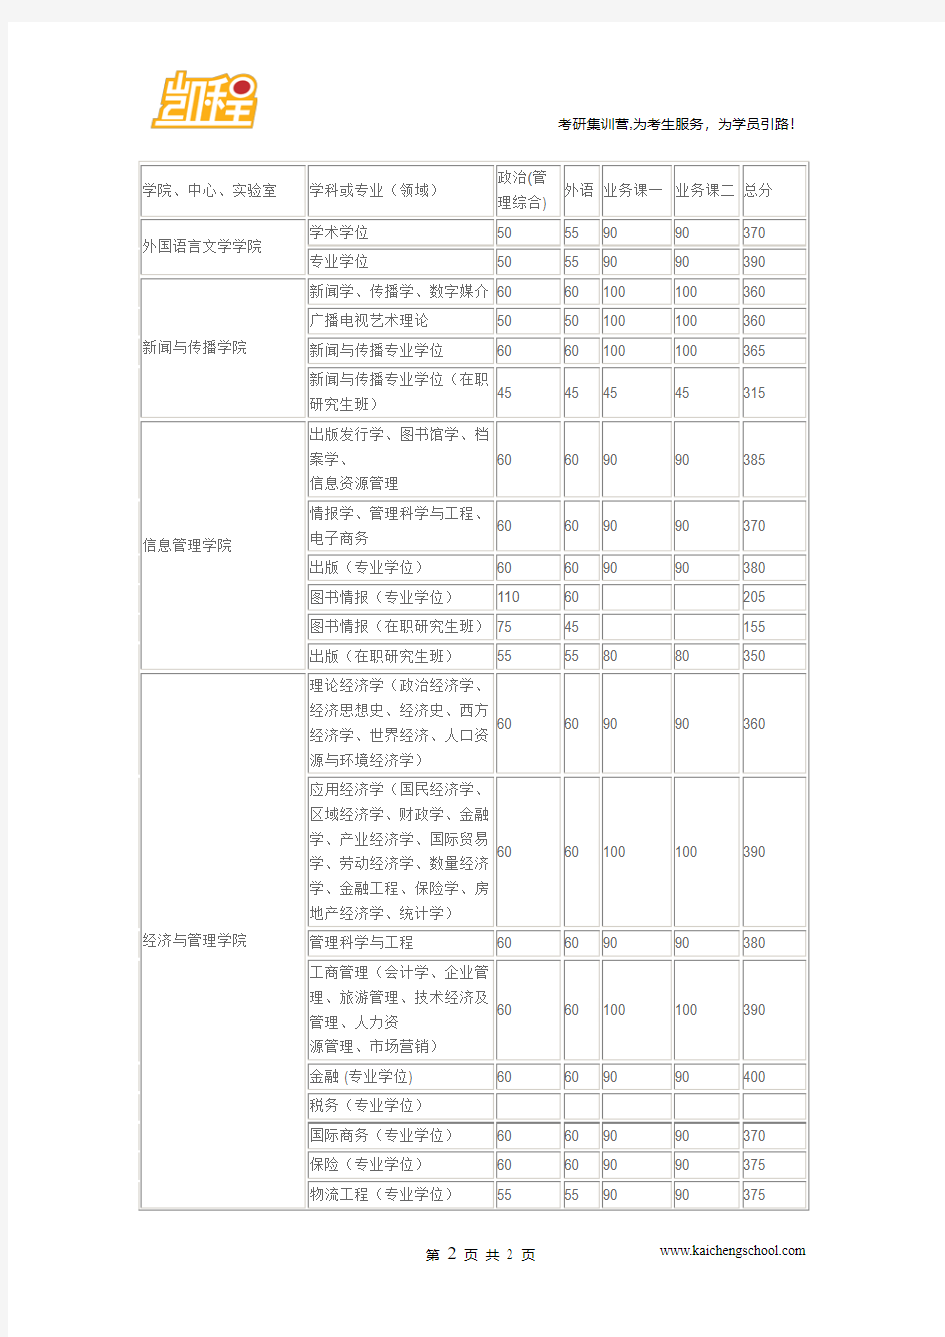 2015年武汉大学地图学与地理信息系统复试分数线是350分